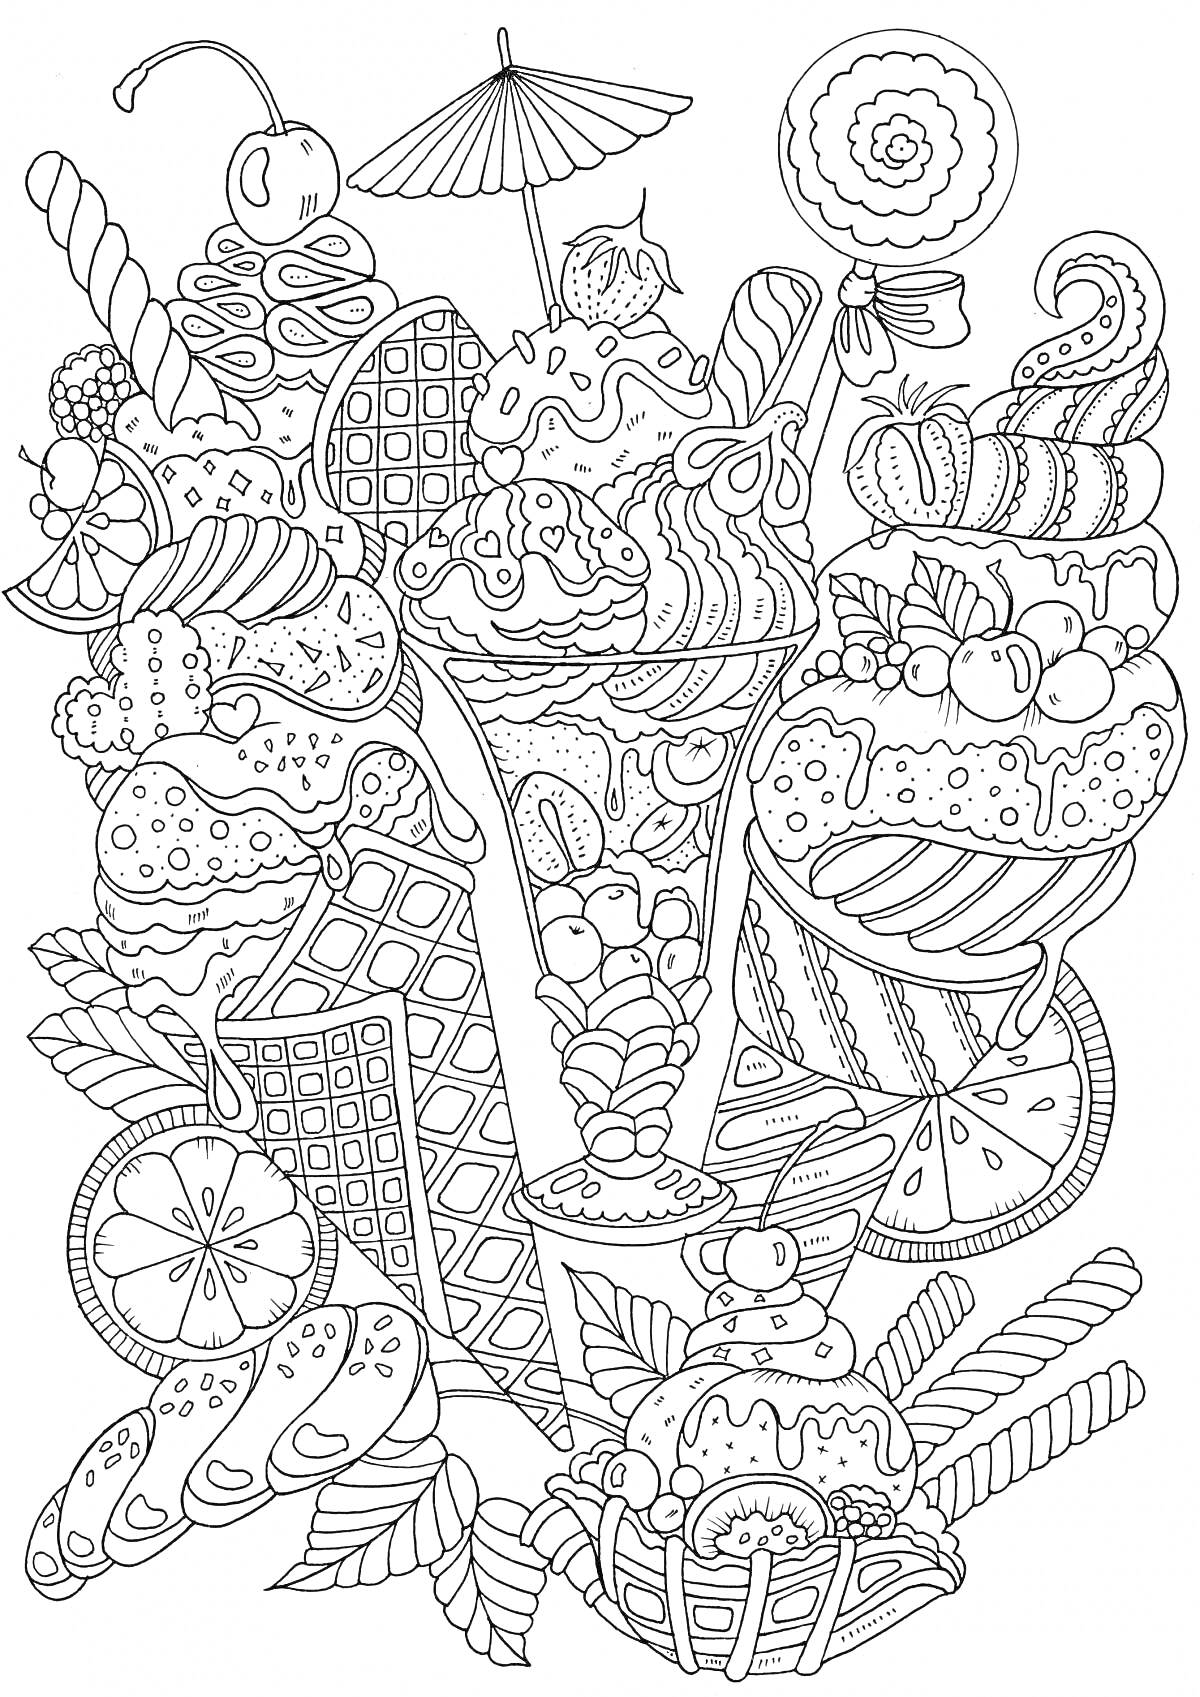 Раскраска Сложное мороженое с вафлями, пирожными, вишнями, дольками апельсина, украшениями и полосатыми соломками